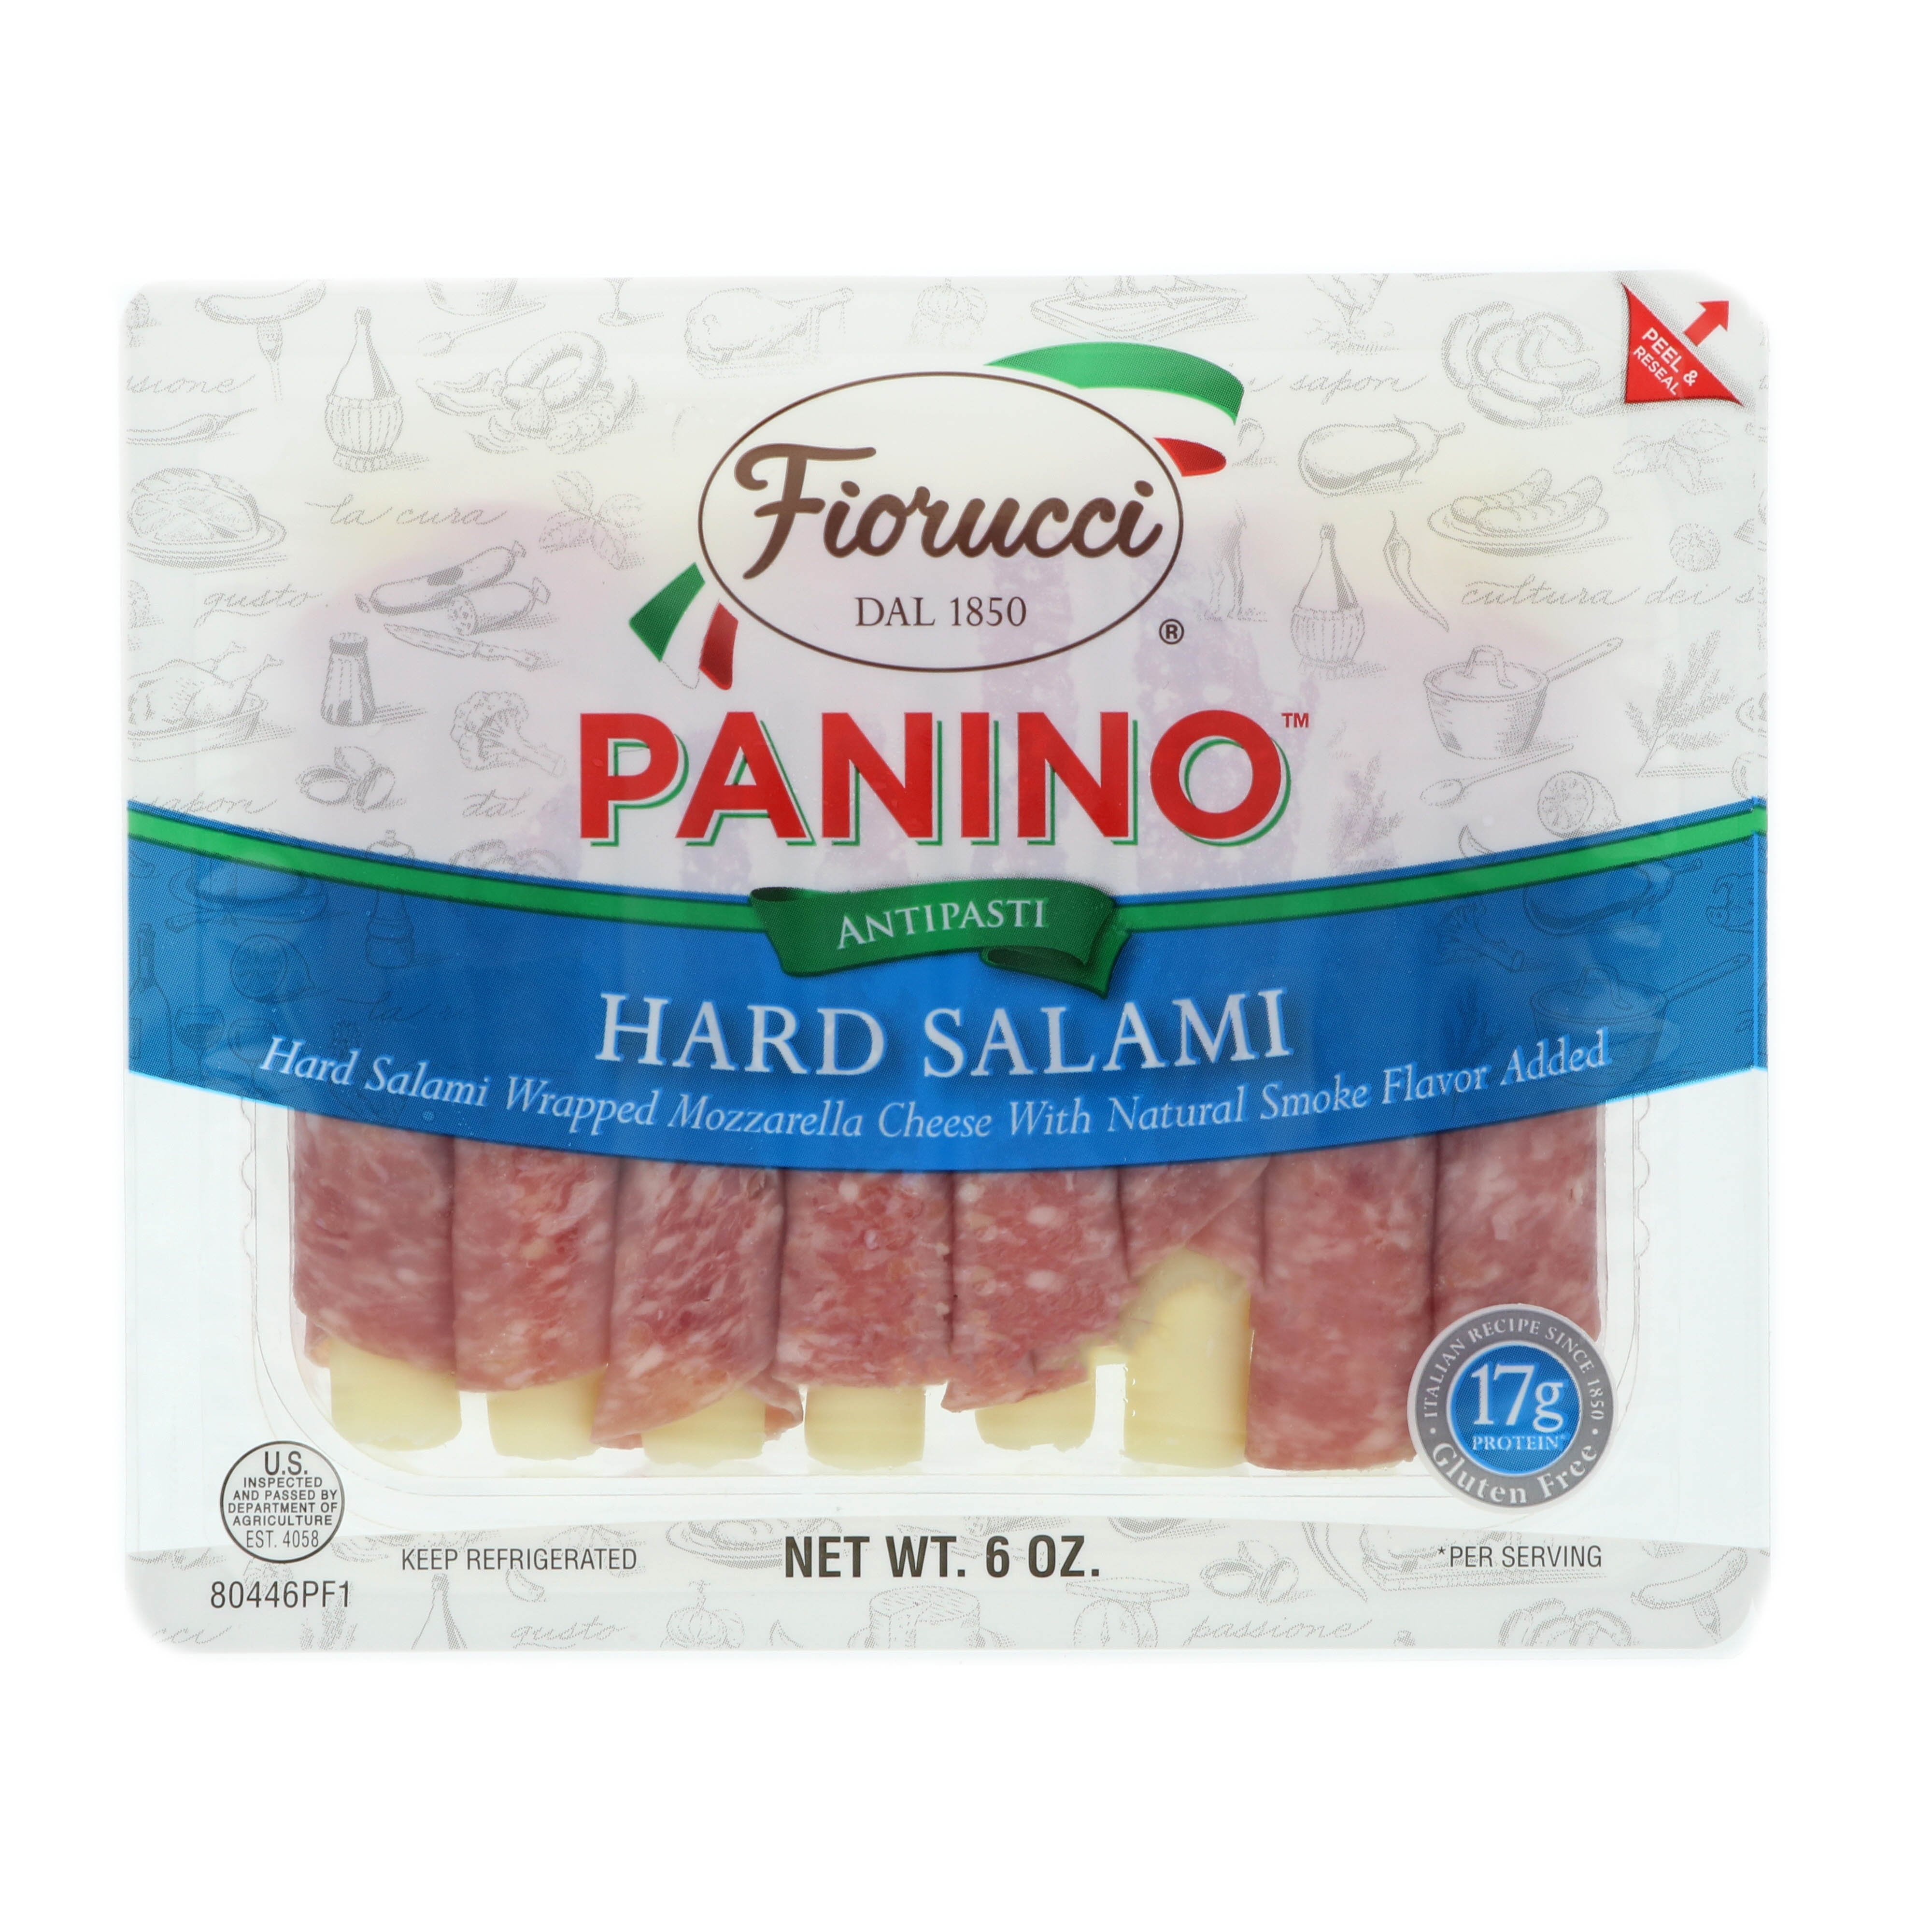 Fiorucci Hard Salami Panino - Shop Cheese at H-E-B